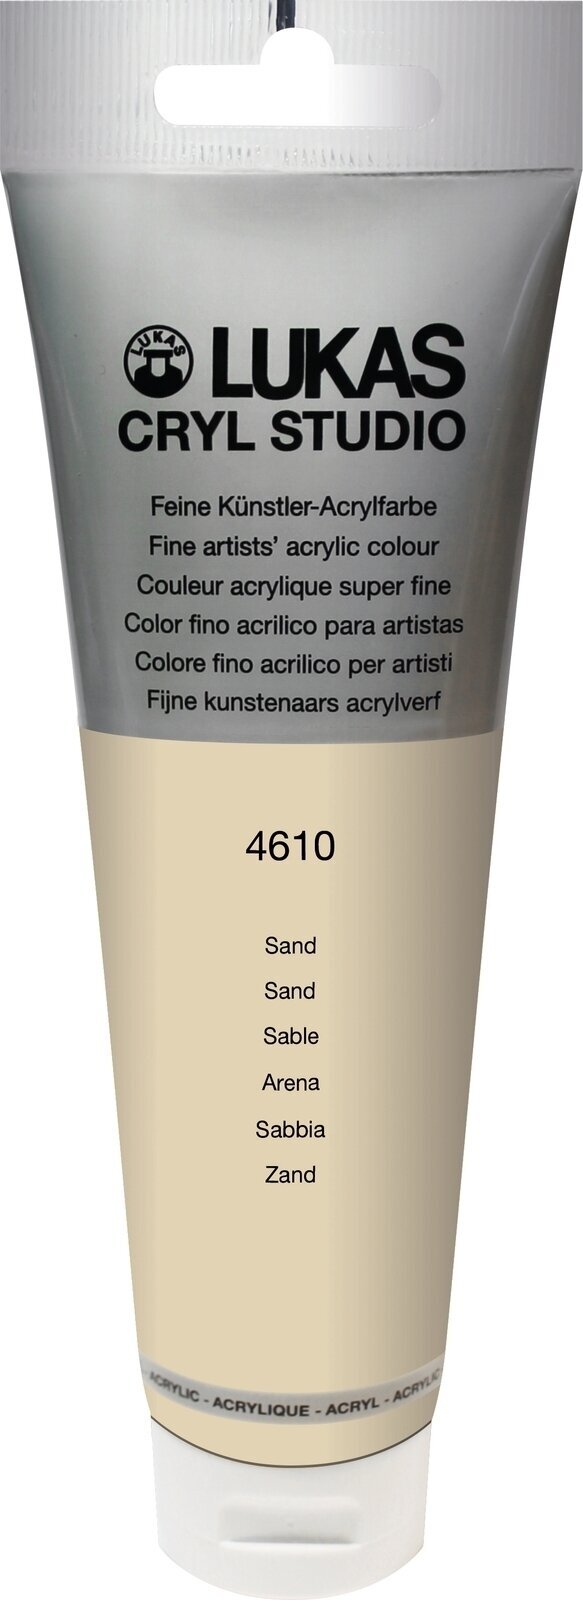 Tinta acrílica Lukas Cryl Studio Tinta acrílica 125 ml Sand